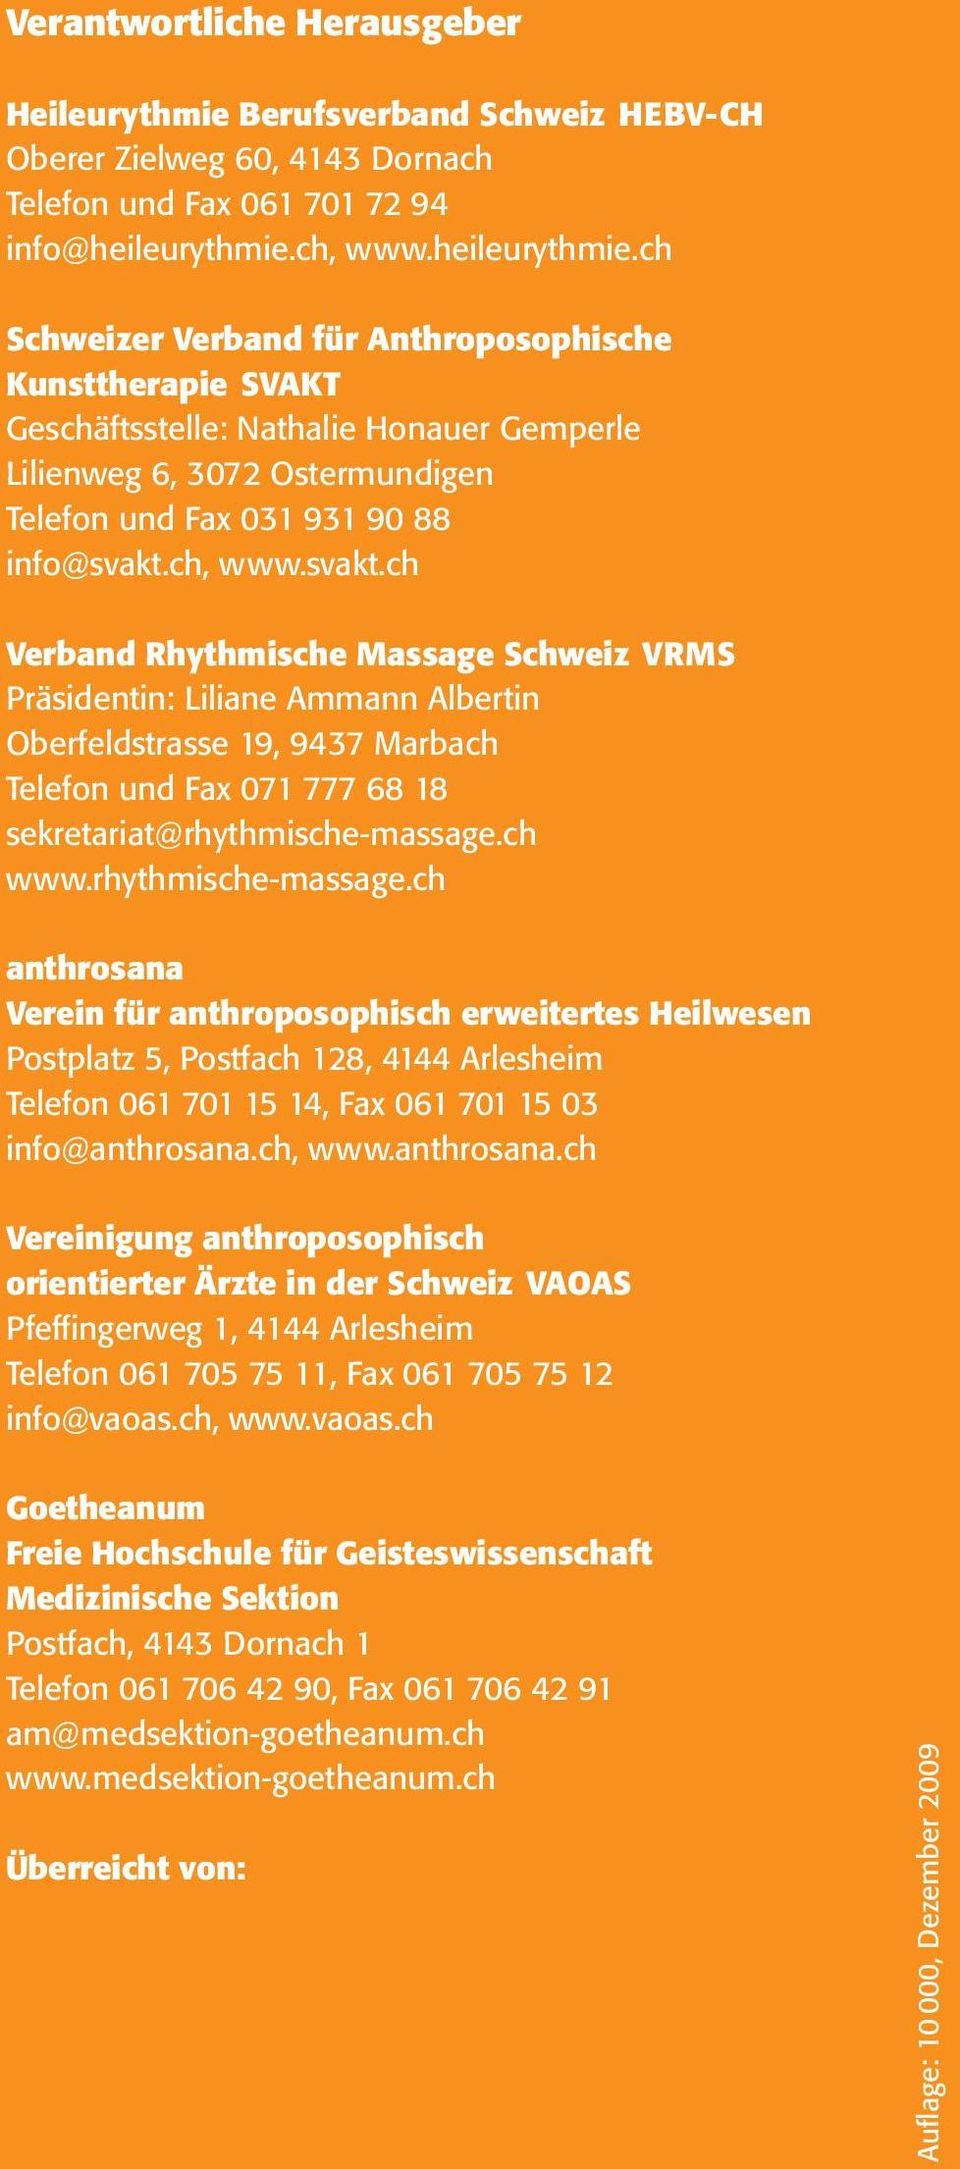 ch Schweizer Verband für Anthroposophische Kunst therapie SVAKT Geschäftsstelle: Nathalie Honauer Gemperle Lilienweg 6, 3072 Ostermundigen Telefon und Fax 031 931 90 88 info@svakt.